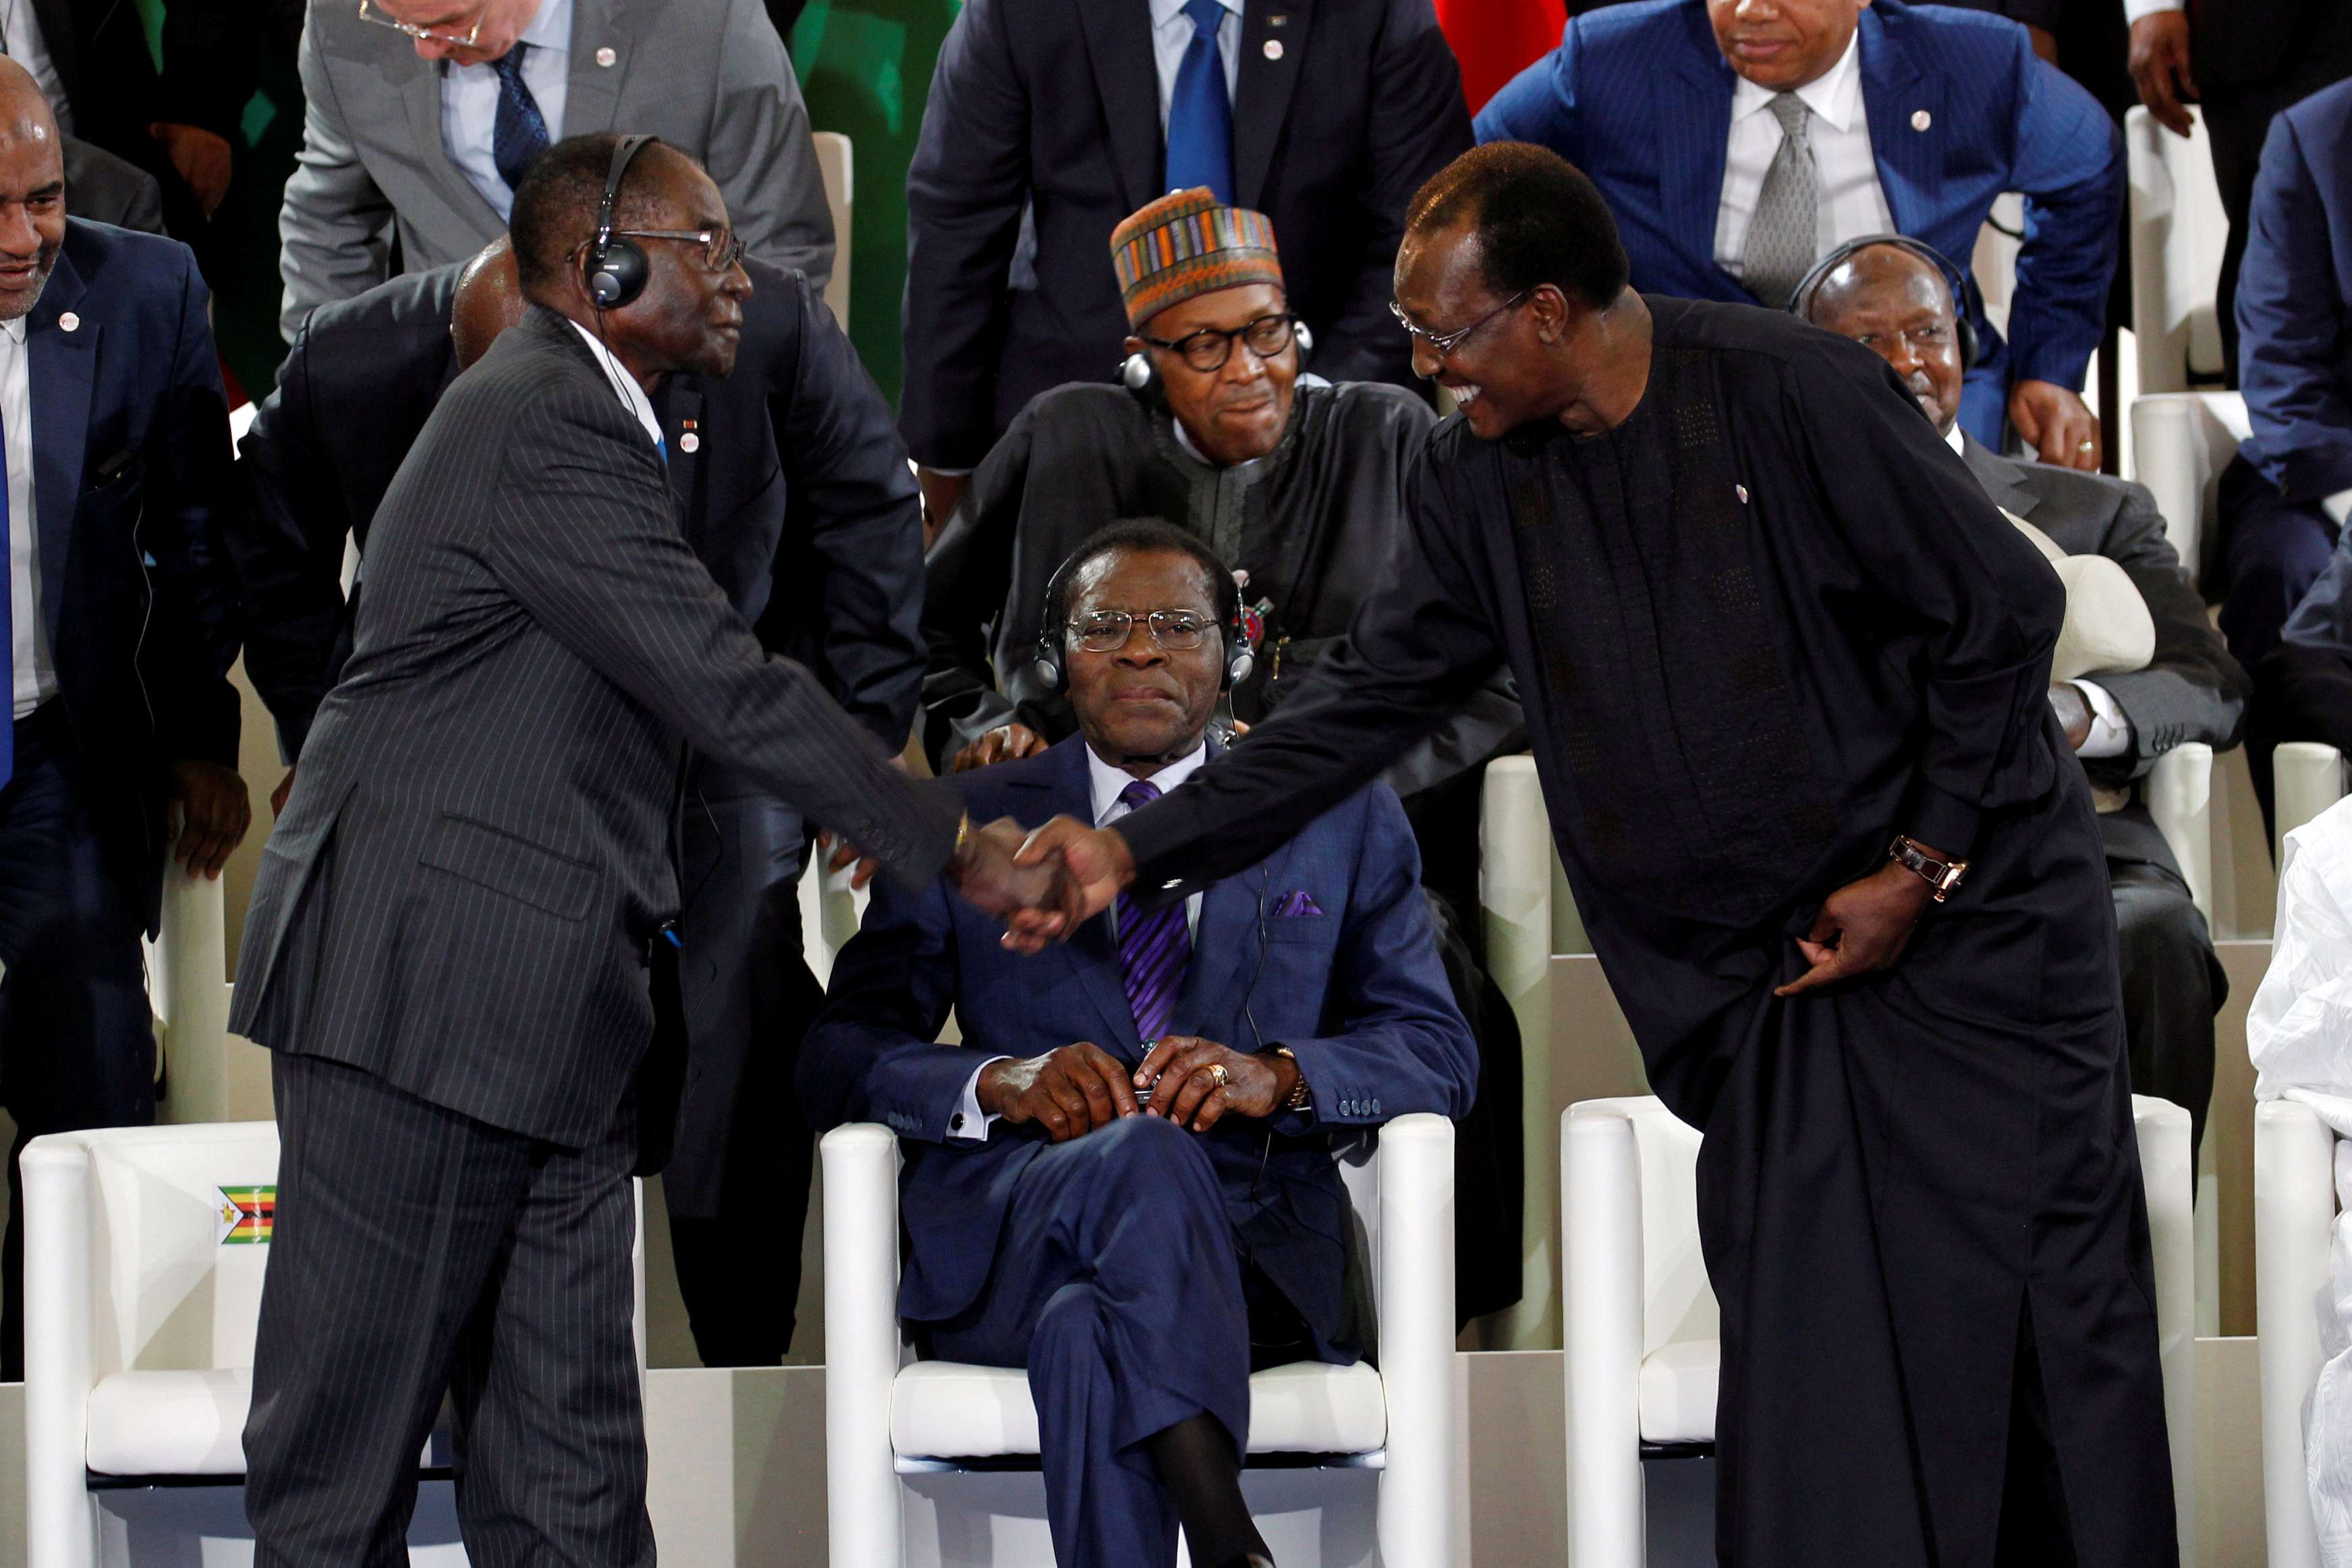 La chute de Mugabe, un espoir pour les oppositions en Afrique ?